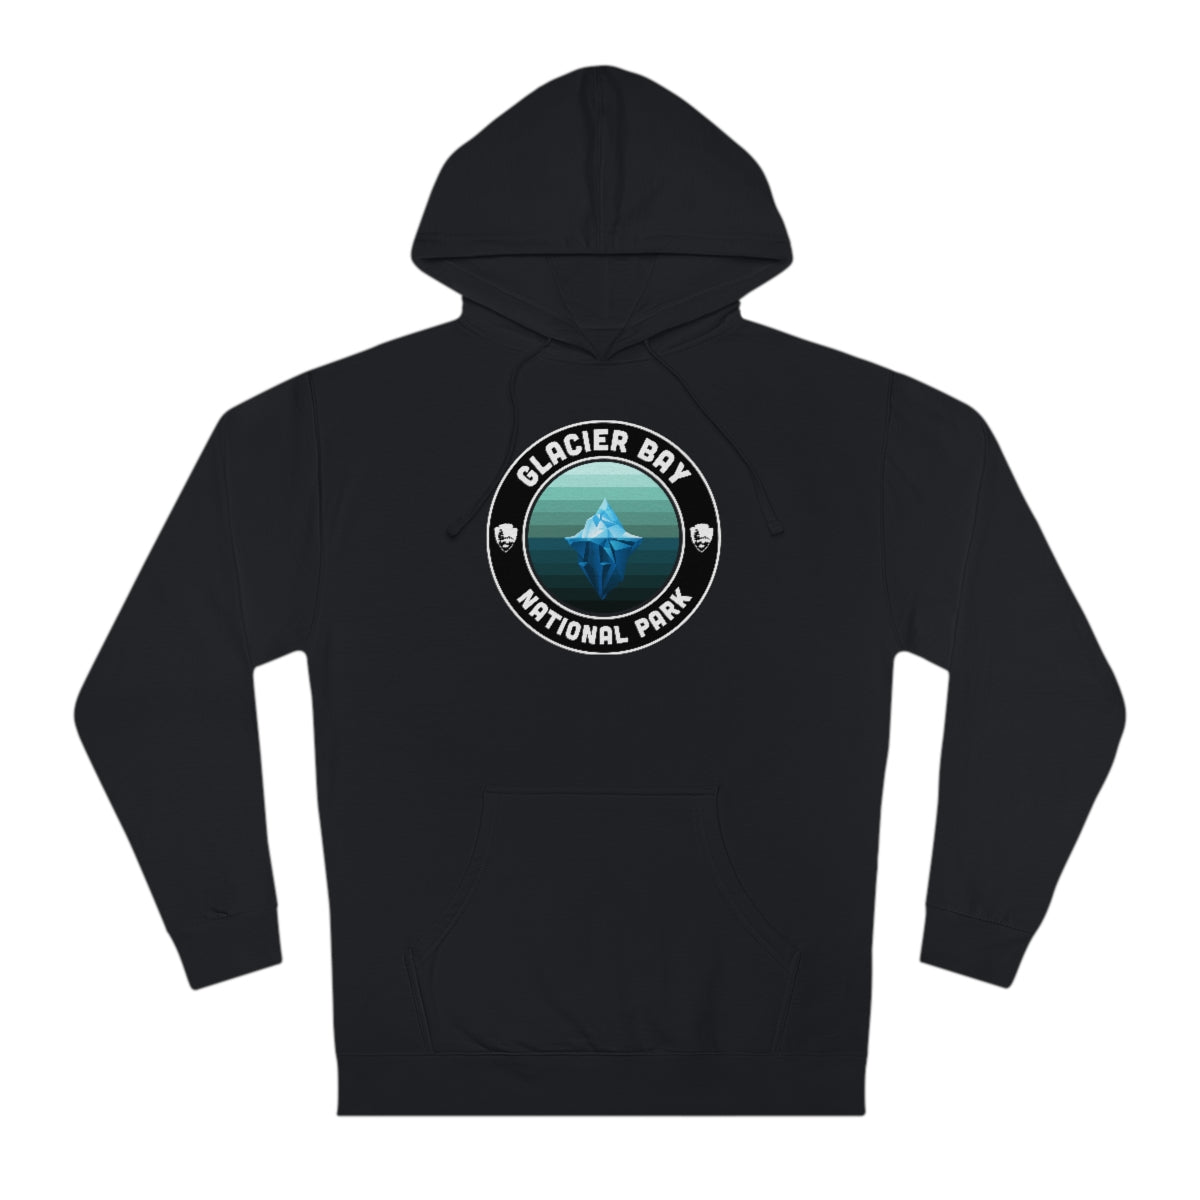 Glacier Bay National Park Hoodie - Round Emblem Design